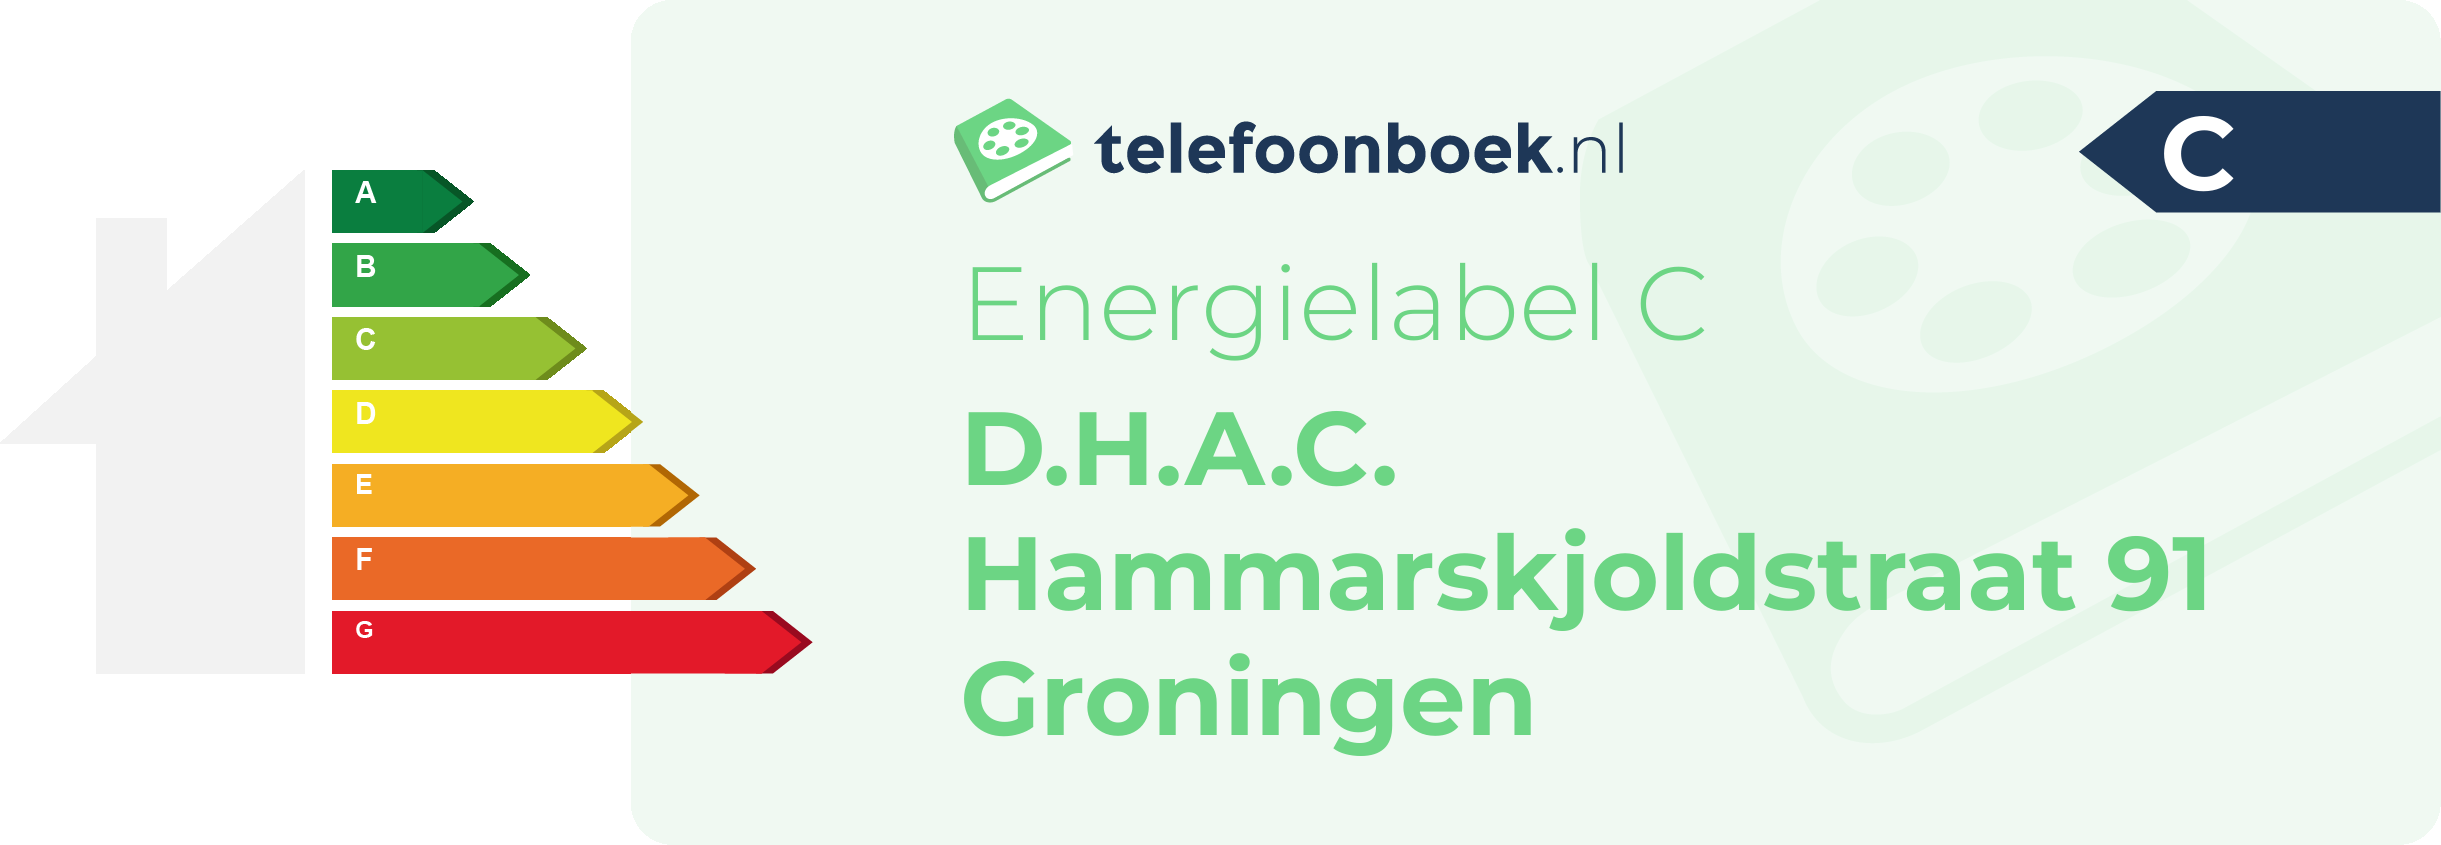 Energielabel D.H.A.C. Hammarskjoldstraat 91 Groningen